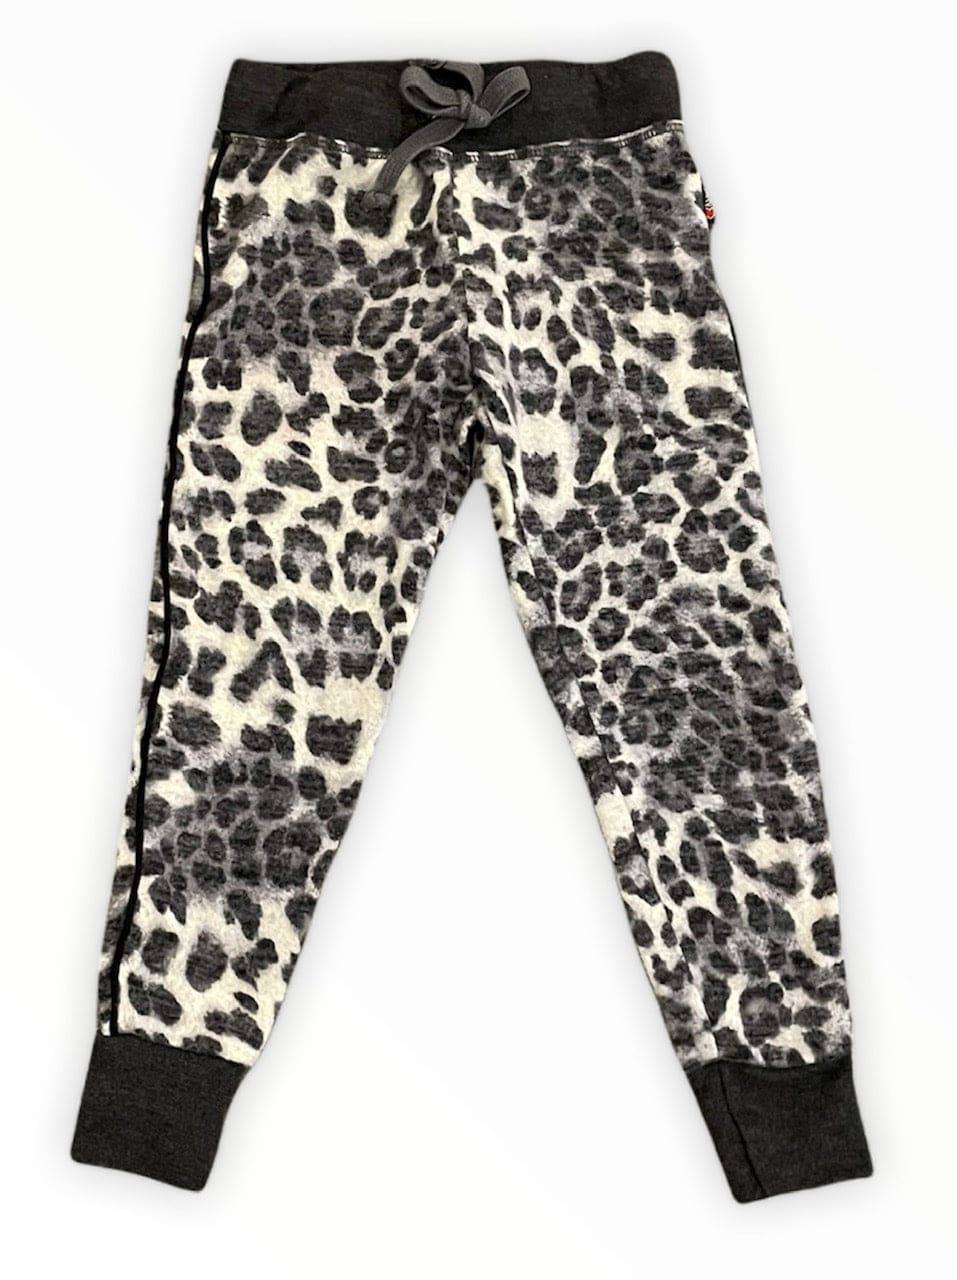 Tight Fit Cuff Pank w/ Black Band - Grey Leopard - Twinkle Twinkle Little One